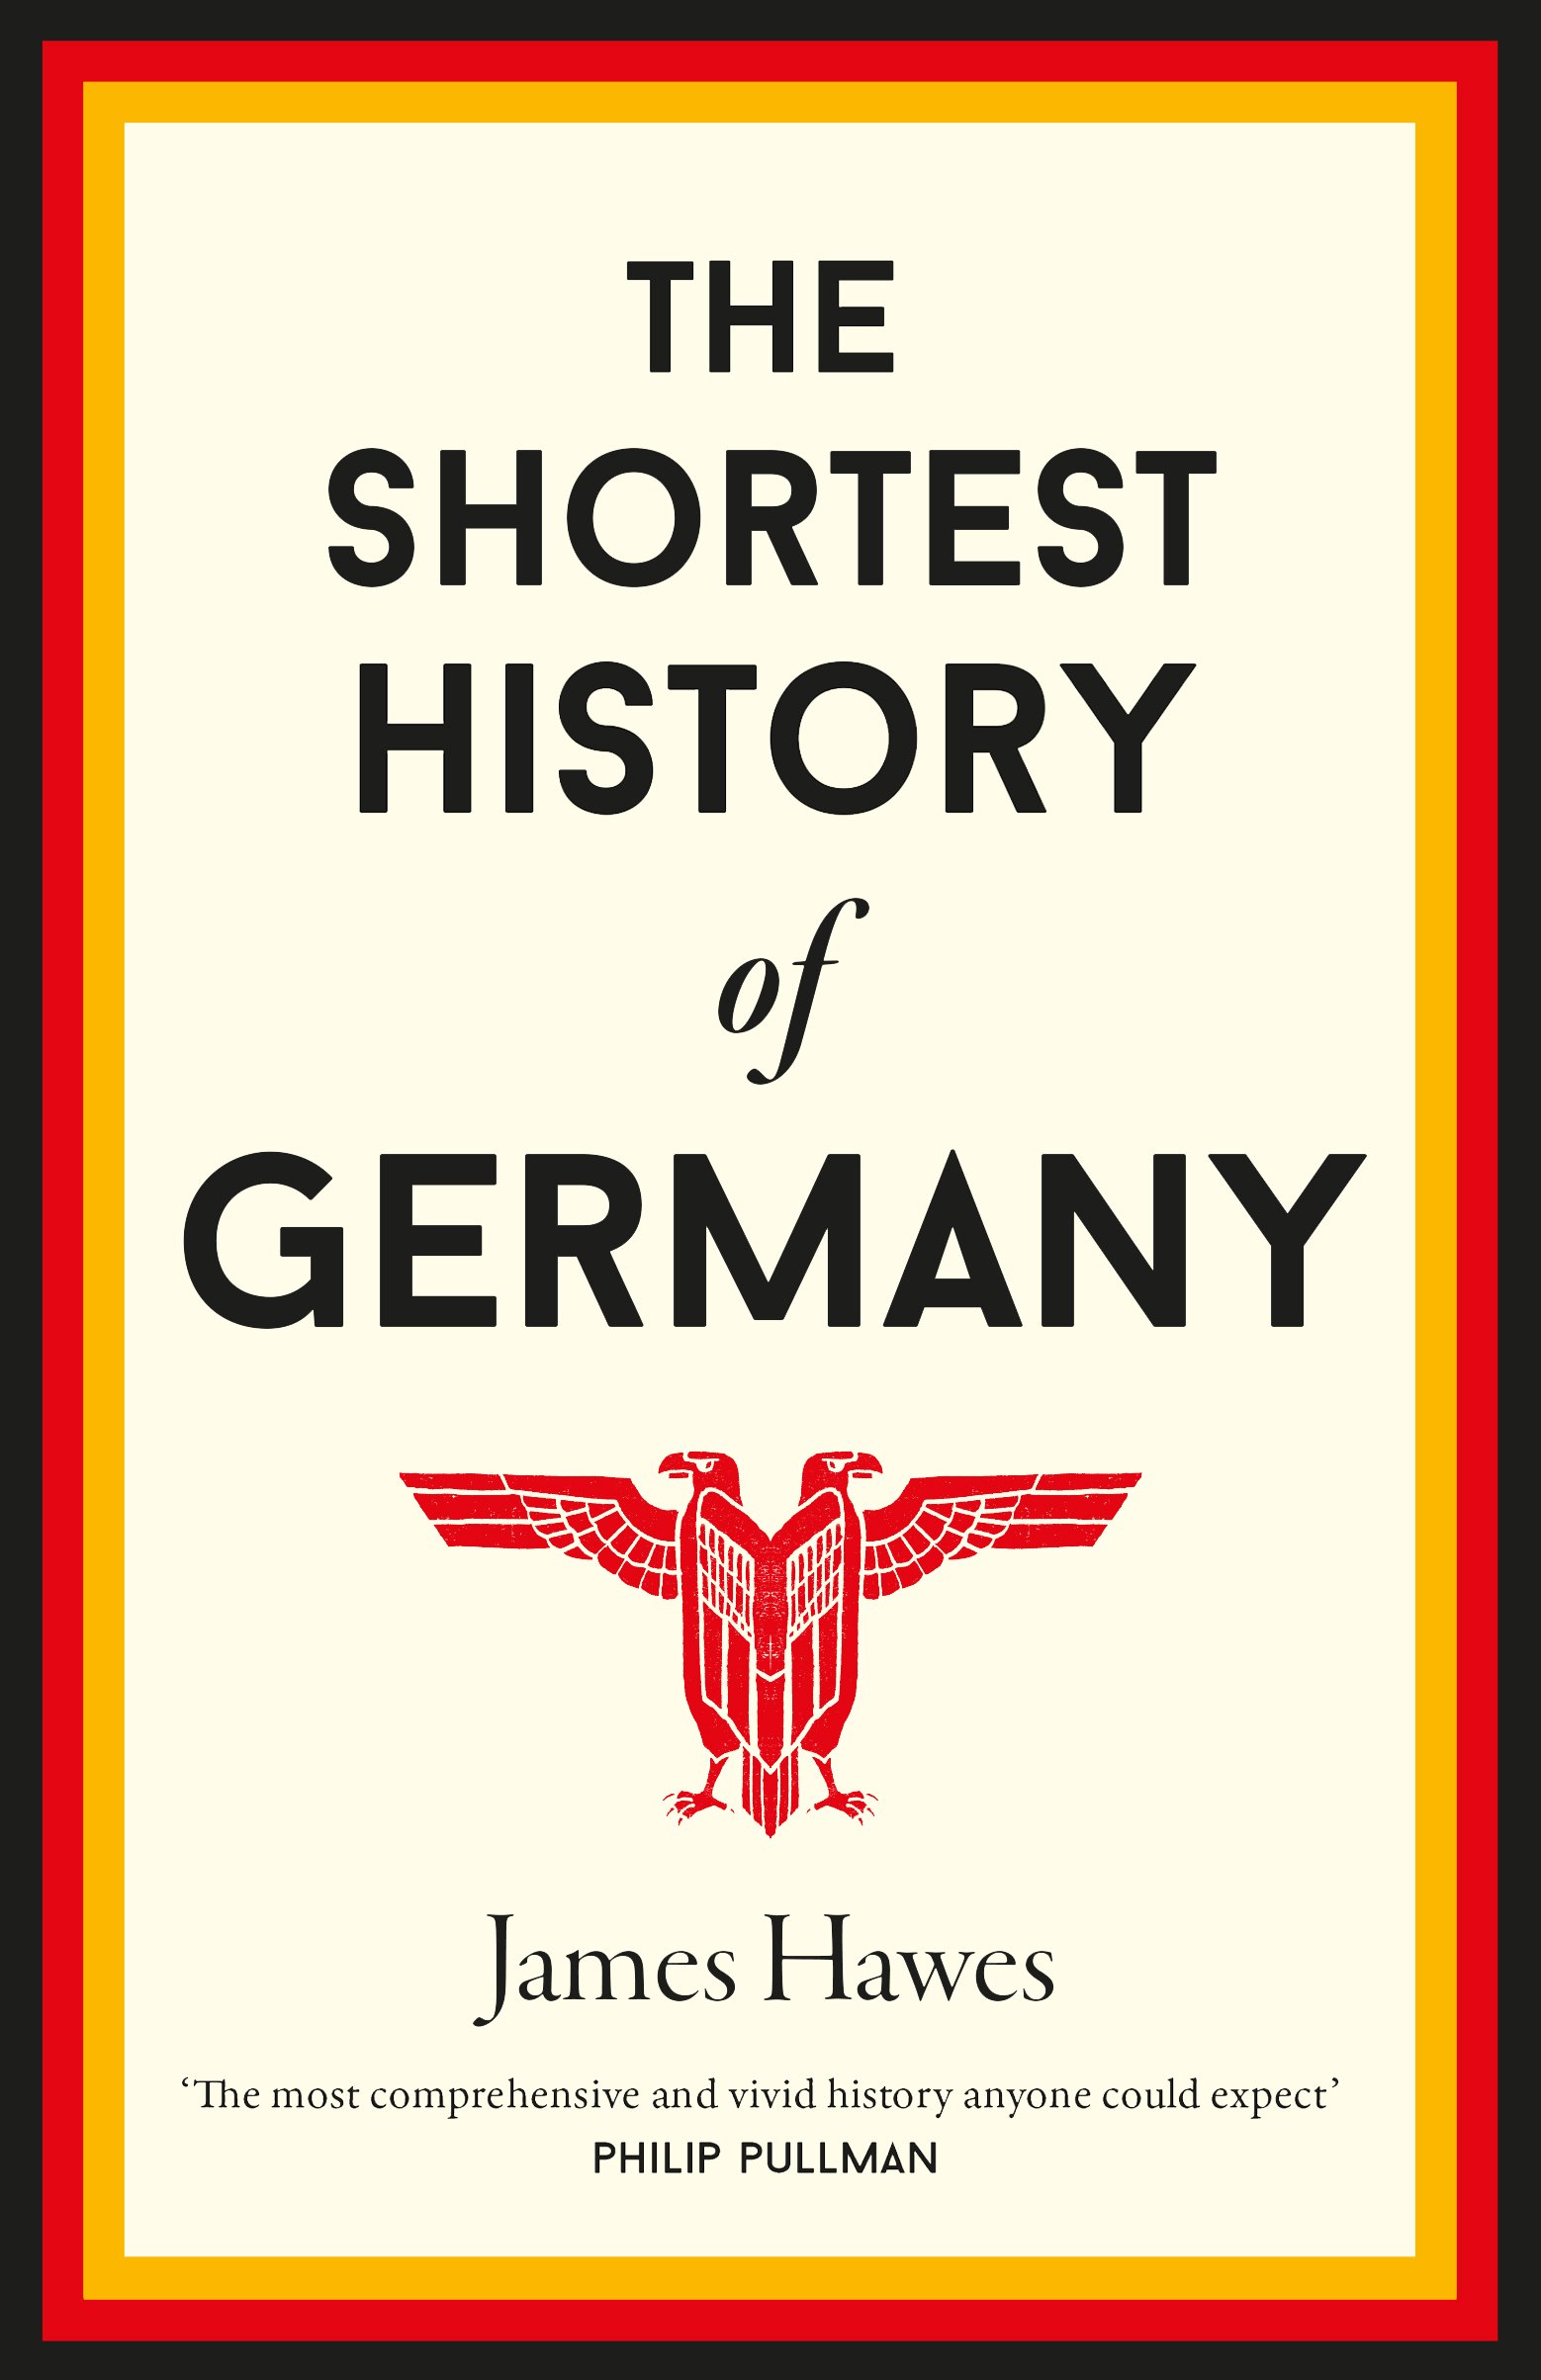 german-history-cover.jpg